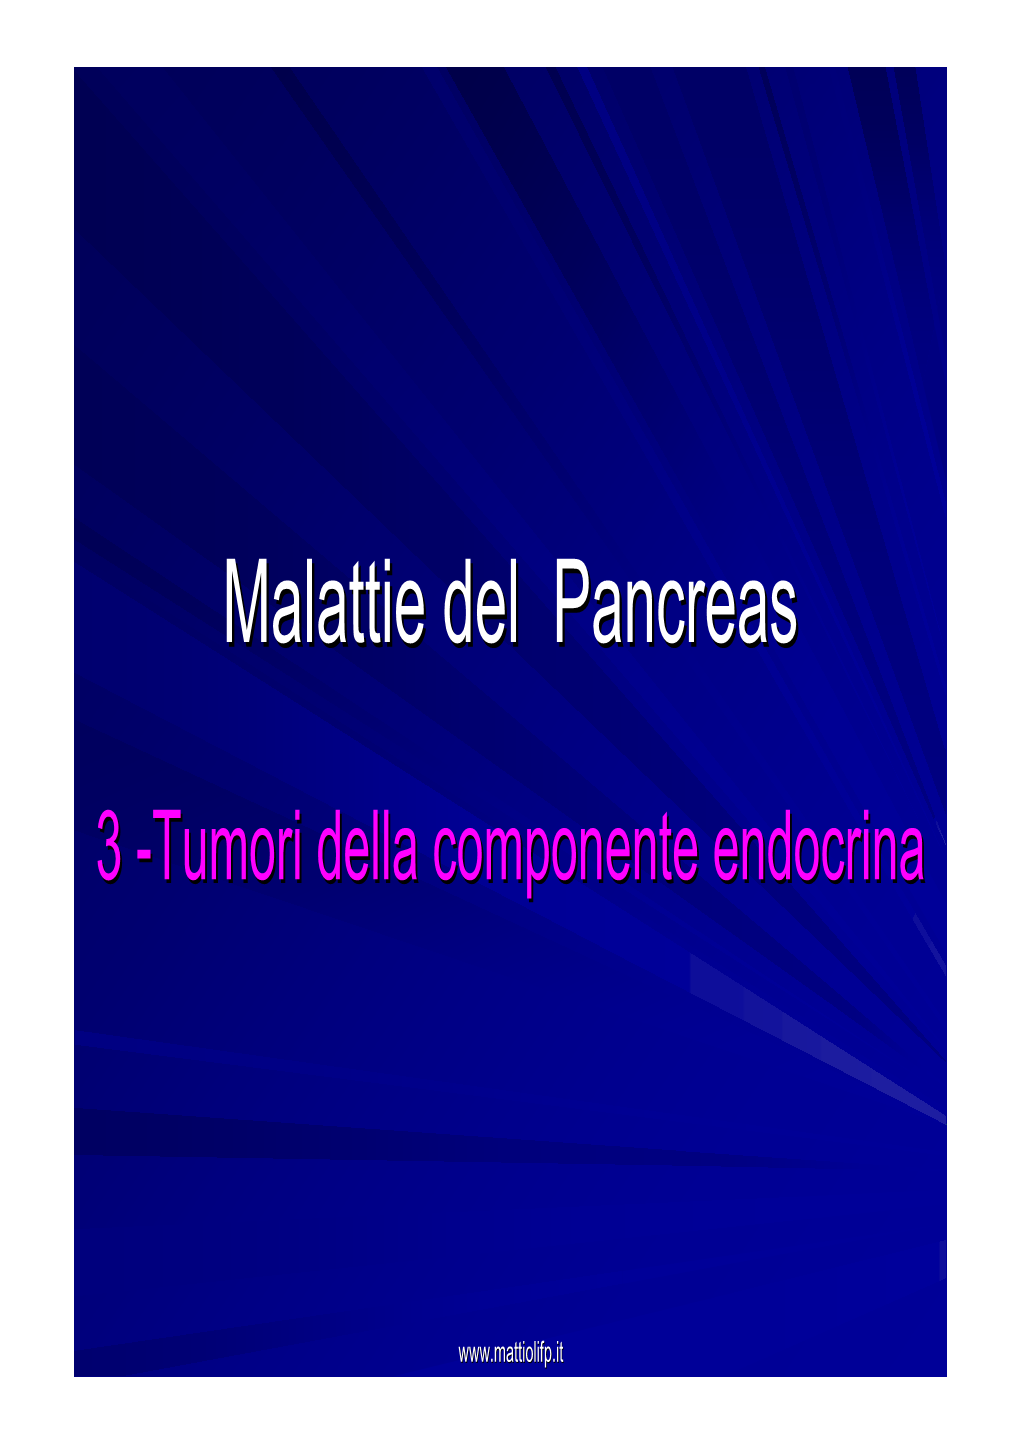 34. Malattie Del Pancreas Tumori Endocrini